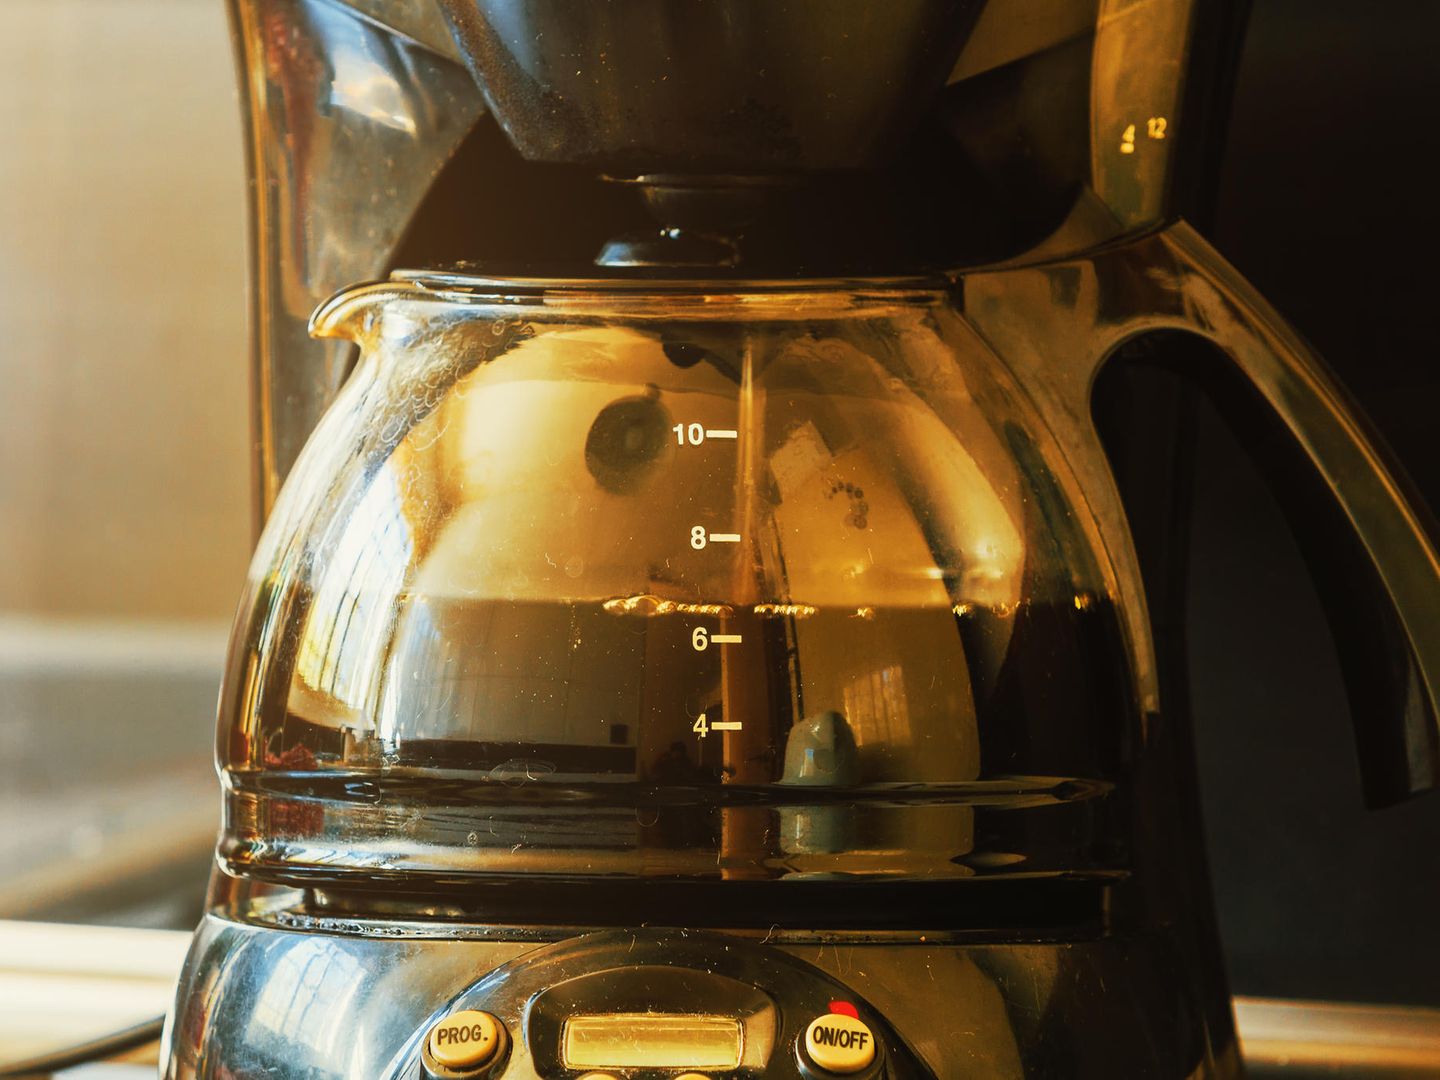 Kaffeemaschine reinigen: Die besten Hausmittel gegen Kalk